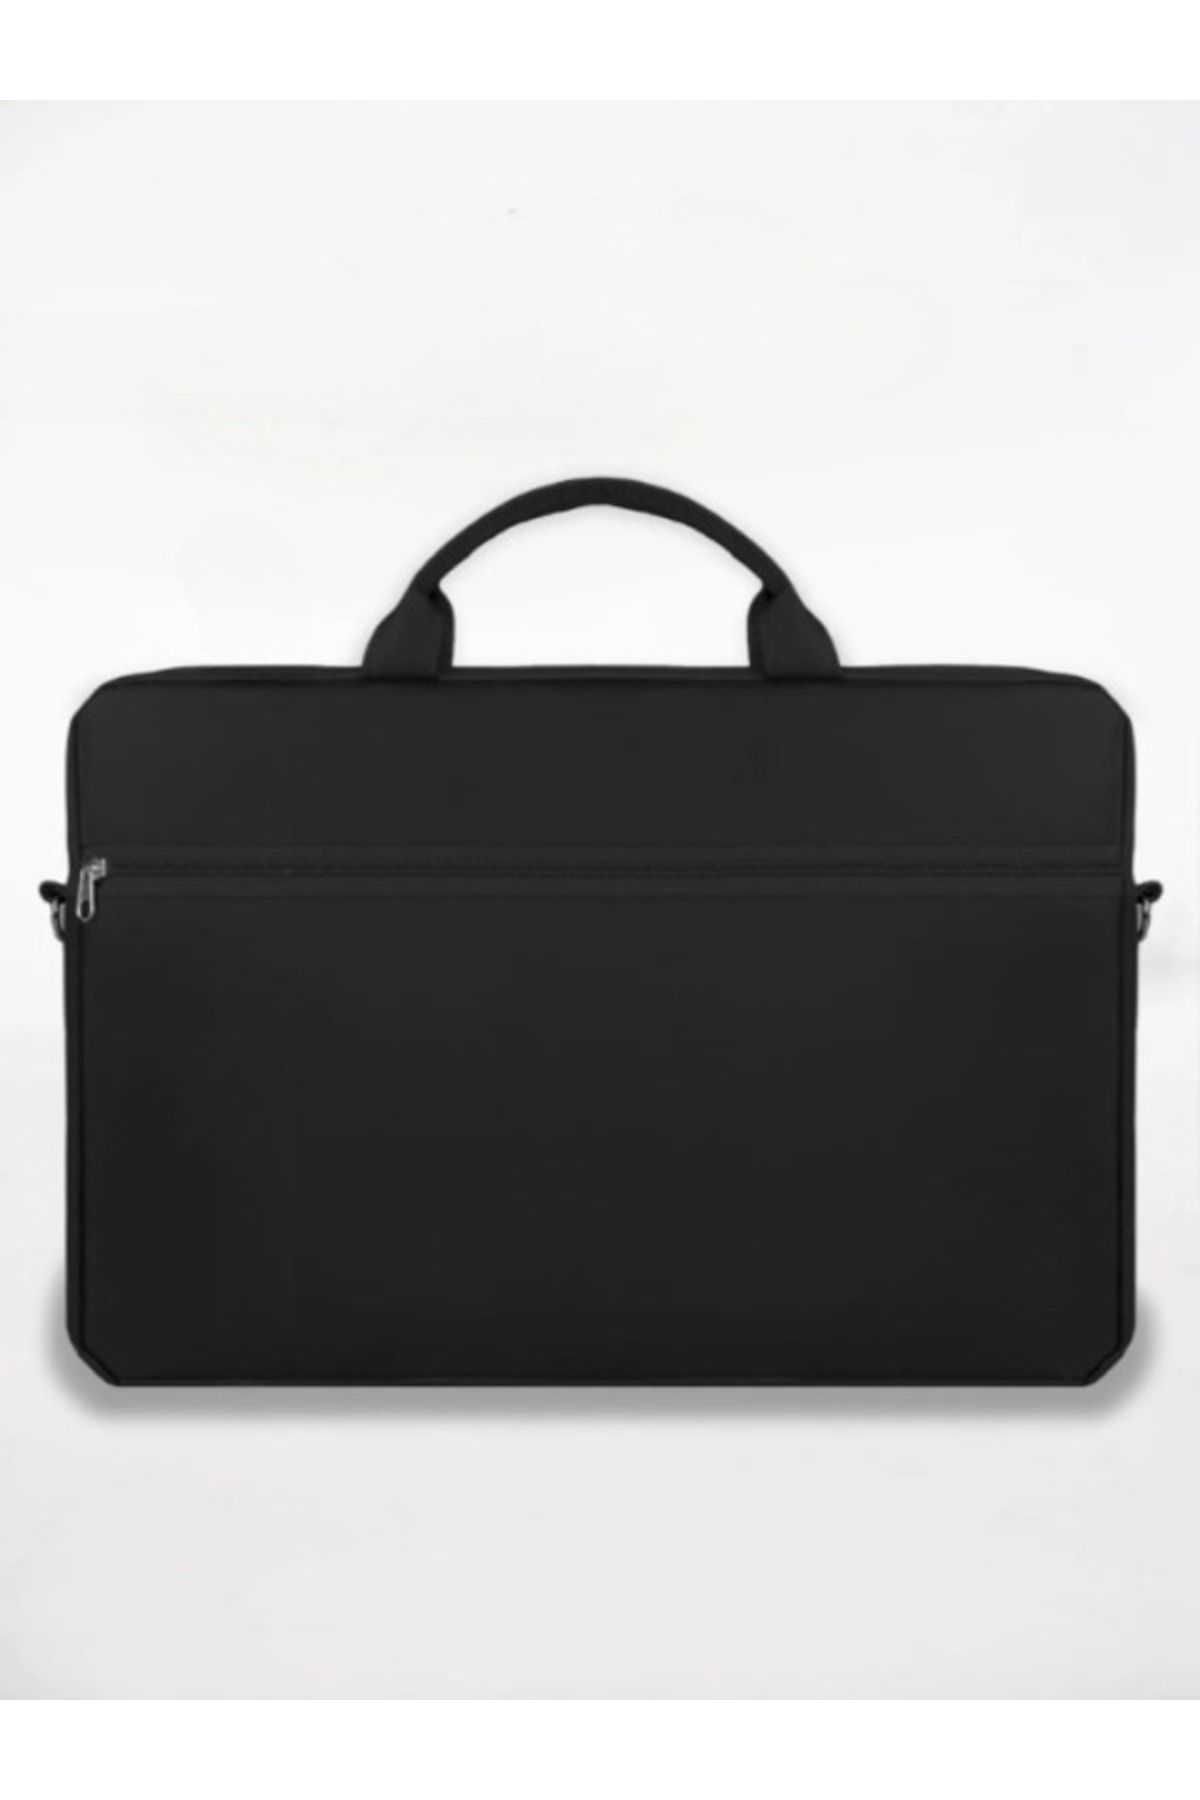 DUDAKTAN KALBE Su Geçirmez Fermuar Detaylı 15.6 İNÇ Leptop Çantası Evrak Taşınabilir Çanta Notebook Laptop Çanta